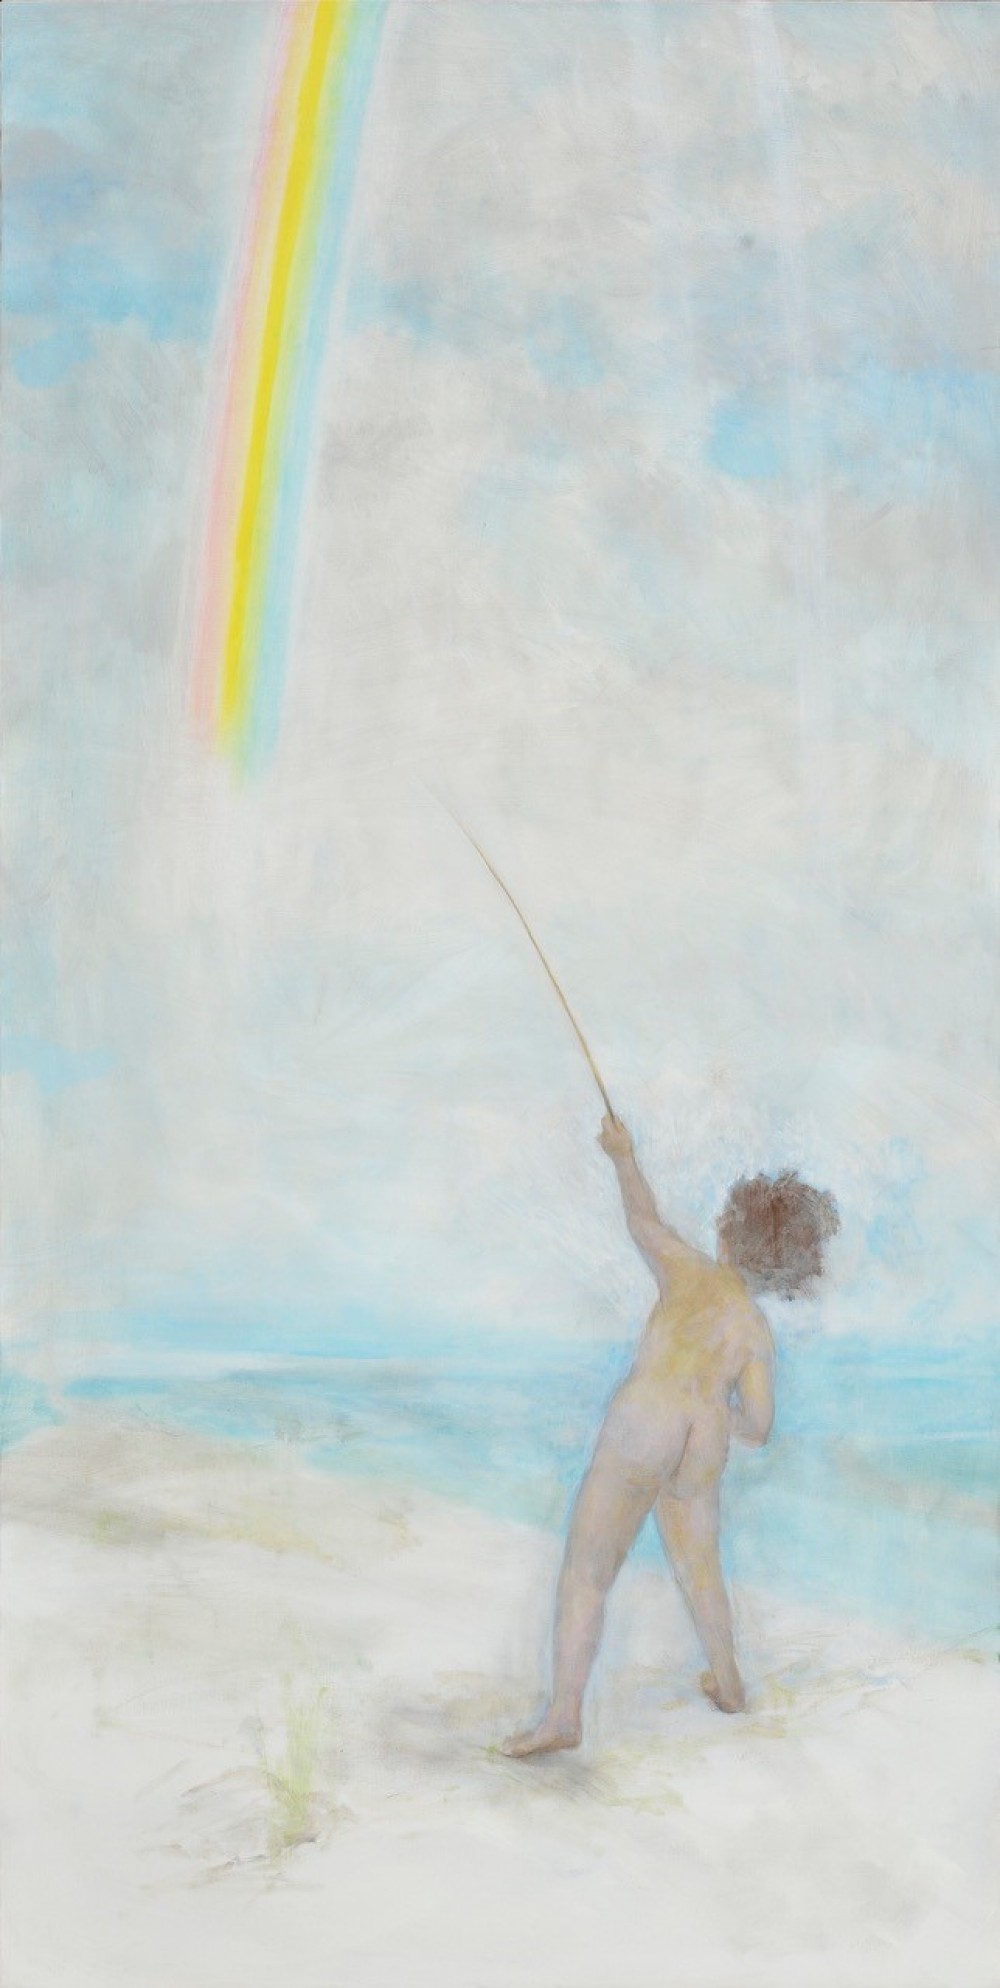 A man painting Rainbow_194×97cm_oil on canvas_2012